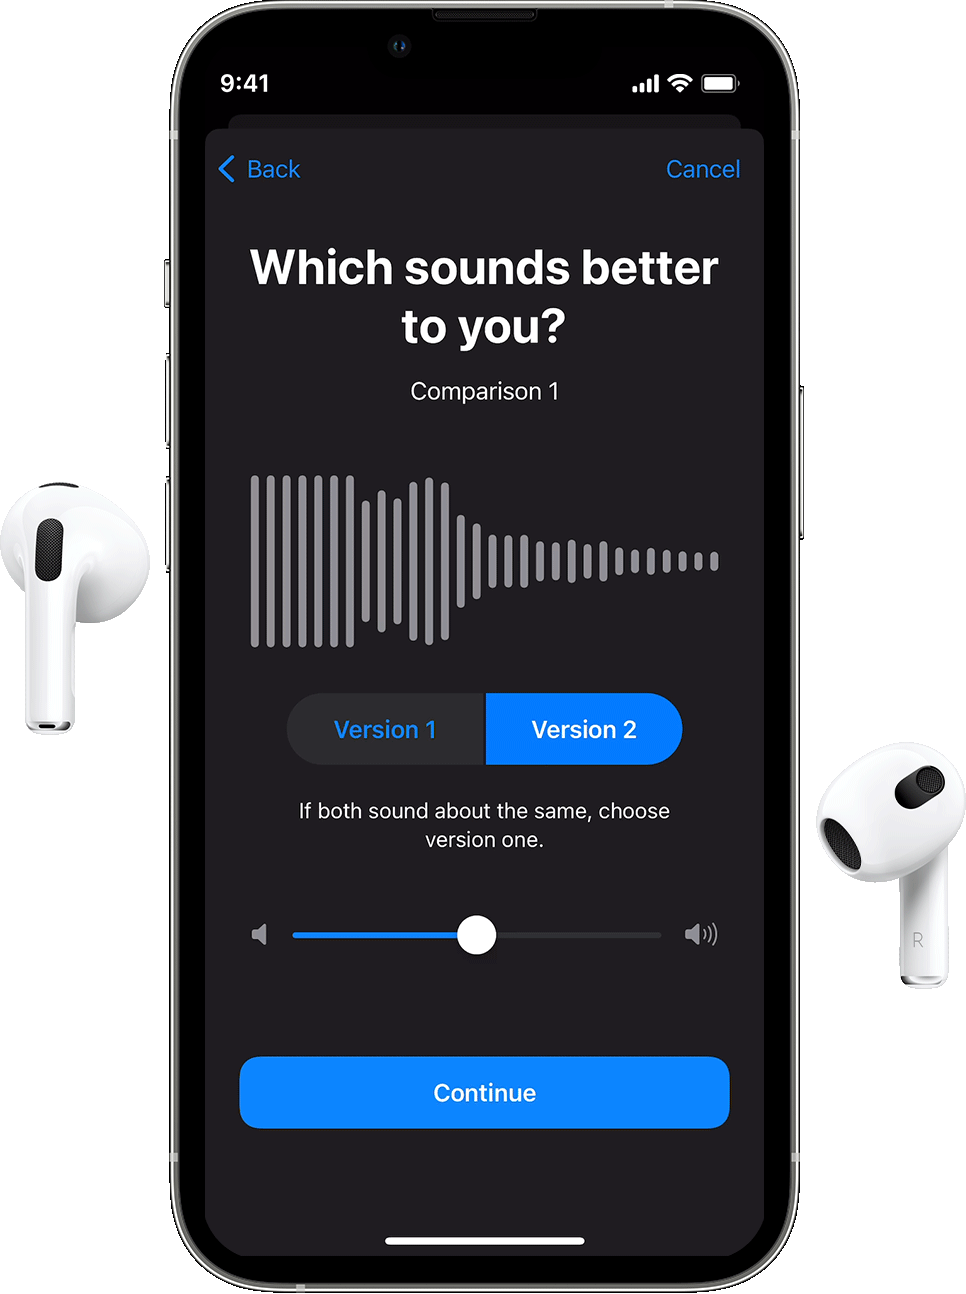 AirPods austiņas un iPhone ierīce, kurā atvērta funkcija Custom Audio Setup (Pielāgota audio iestatīšana) un parādīts jautājums par to, kurš audio fragments izklausās labāk.